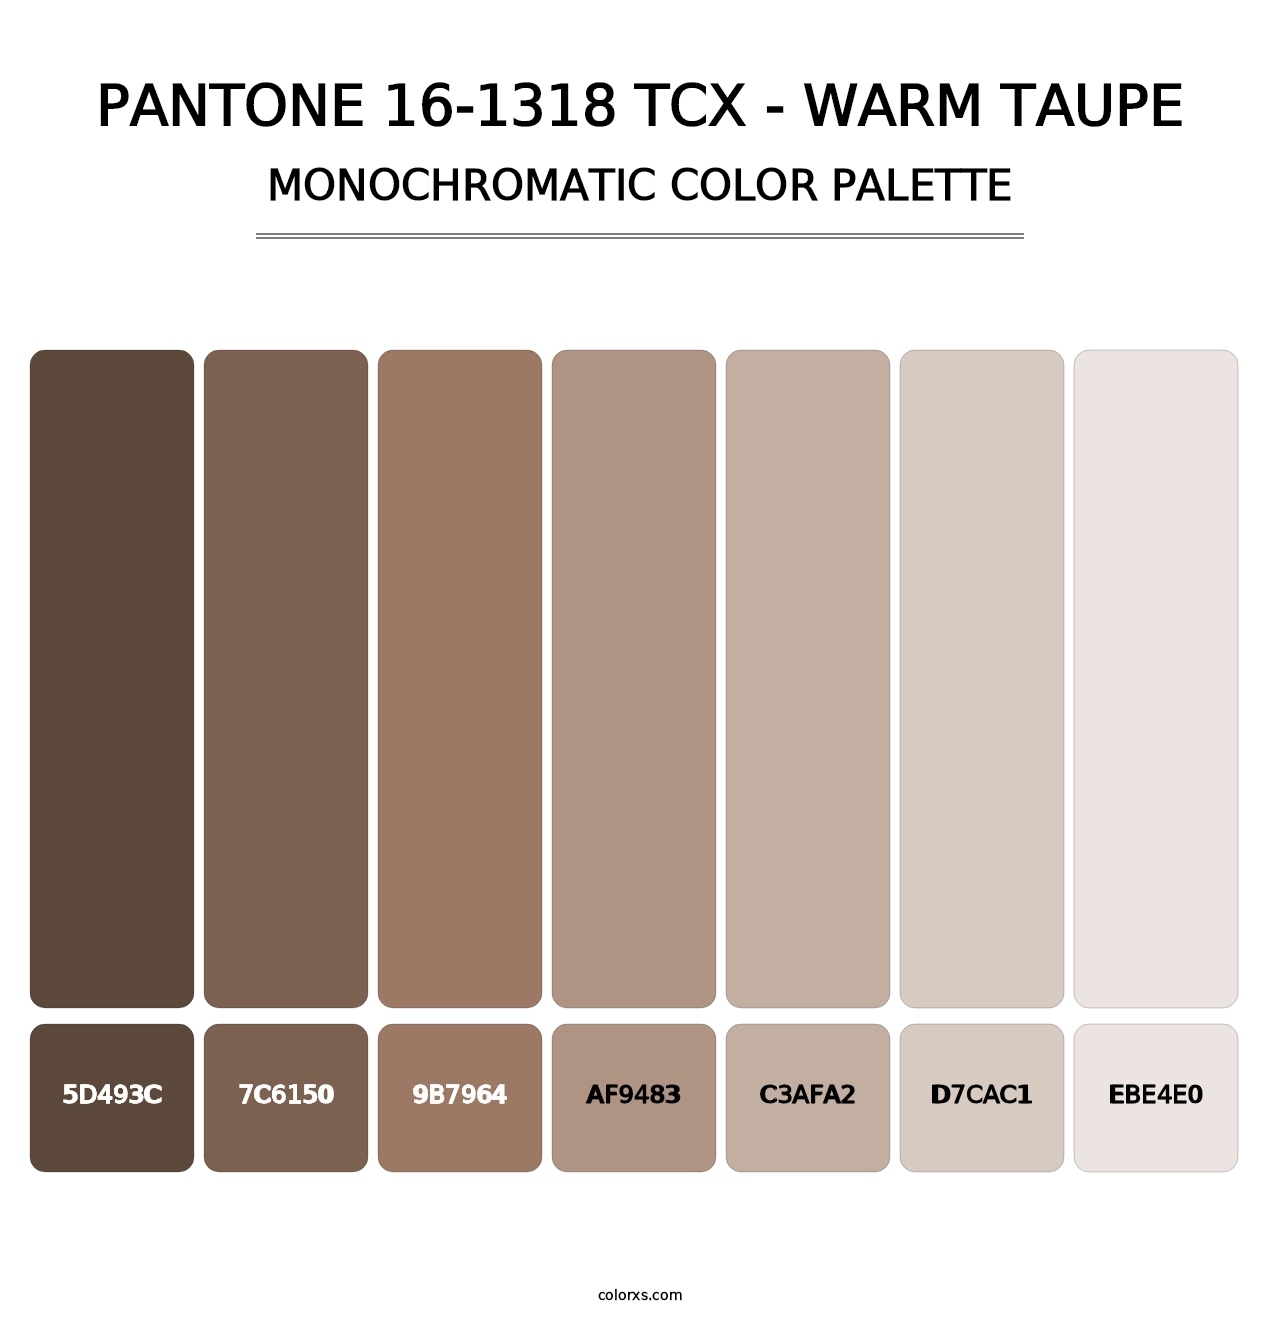 PANTONE 16-1318 TCX - Warm Taupe - Monochromatic Color Palette